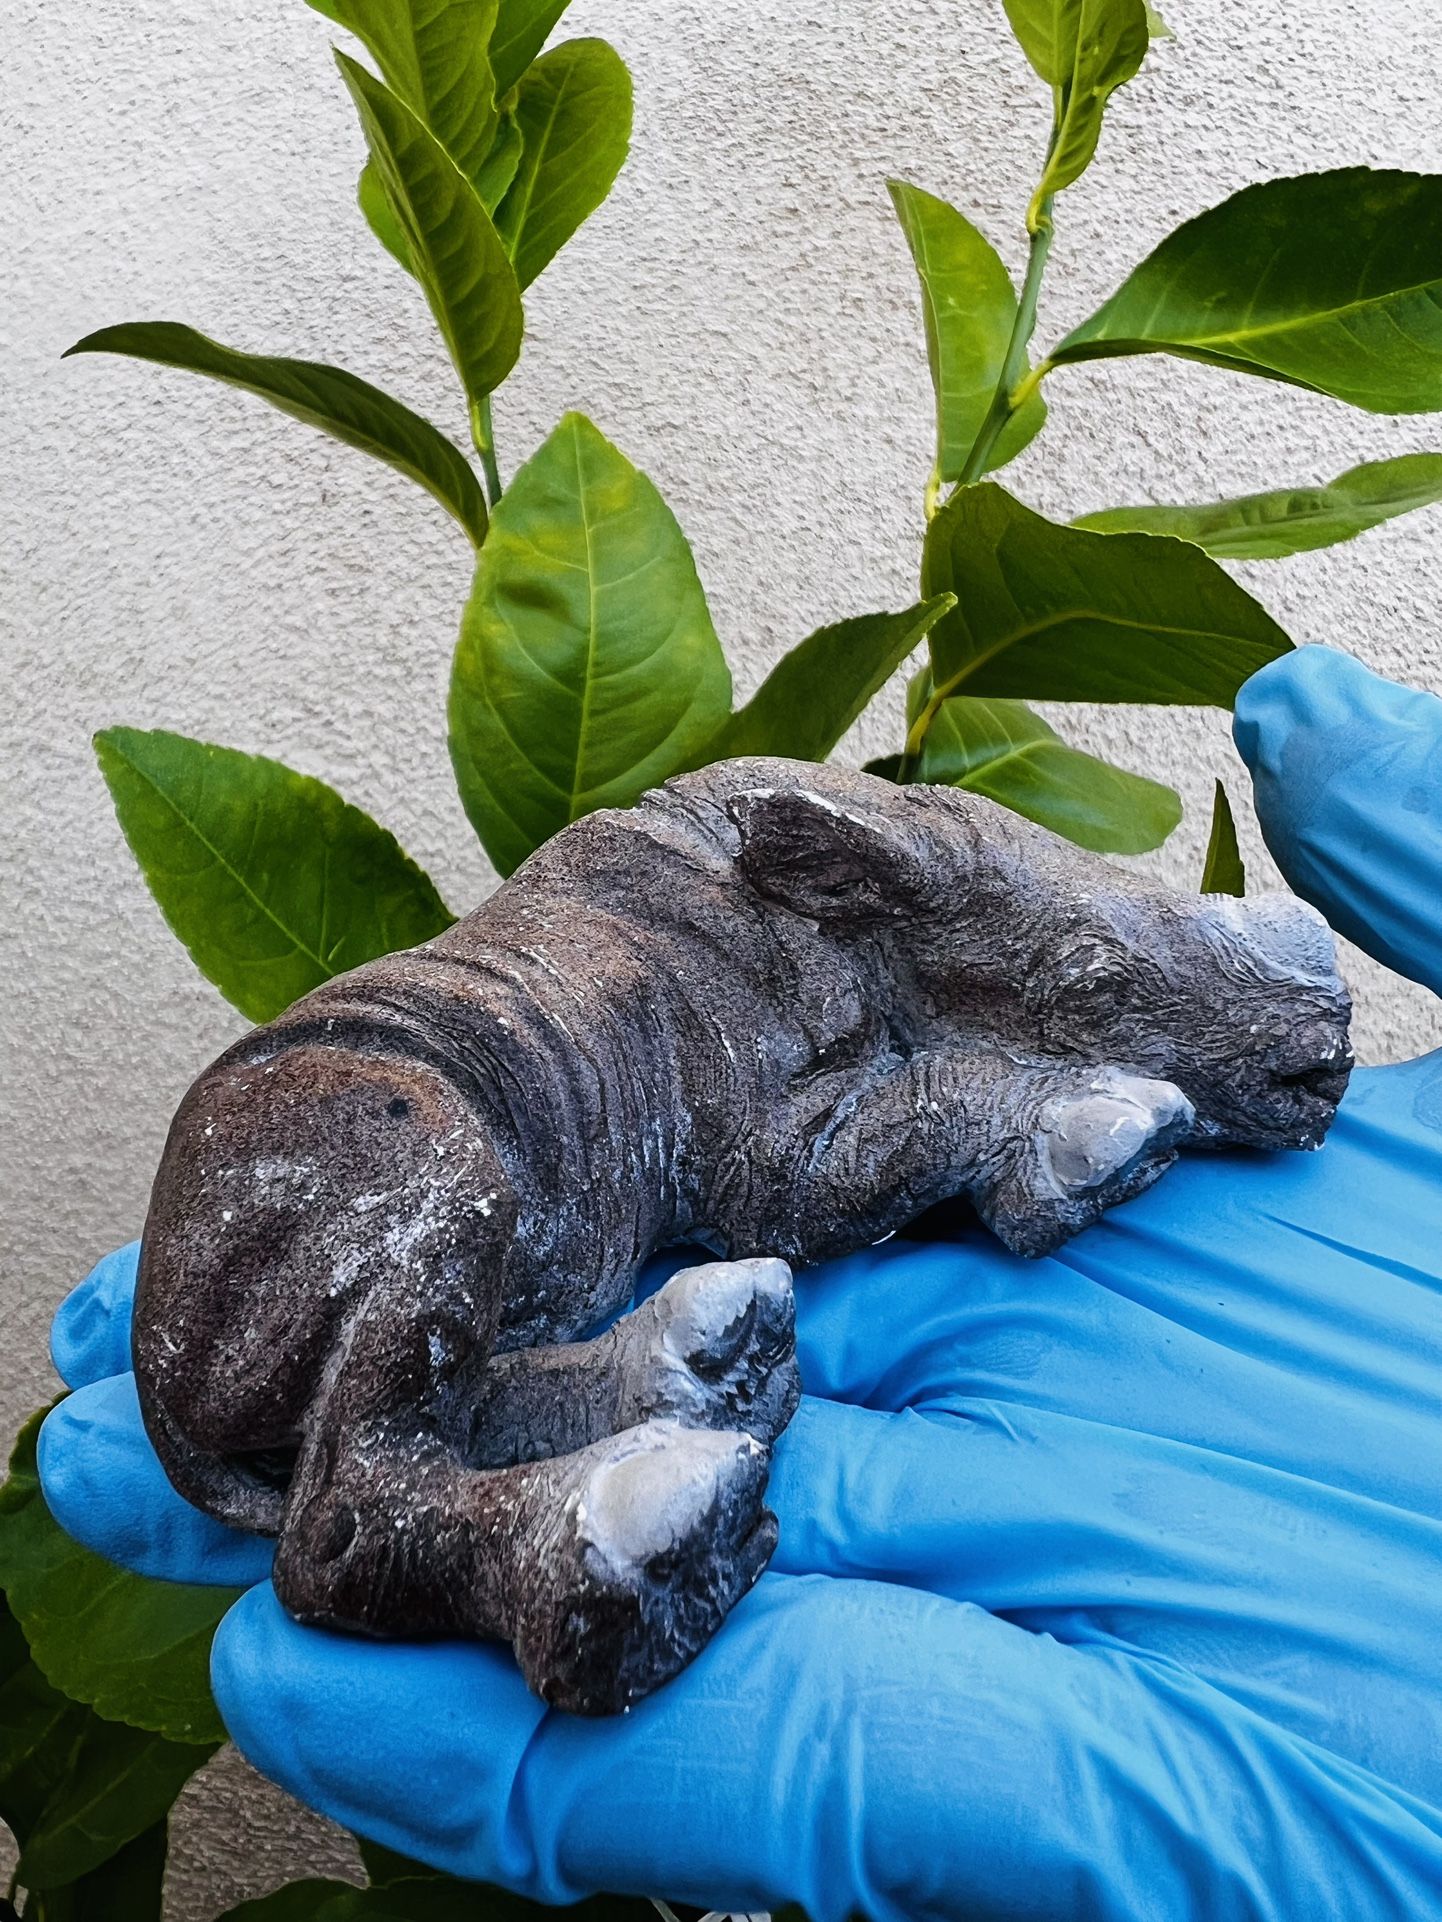 Baby Rhino Replica Small Sculpture Statue Animal Collectible